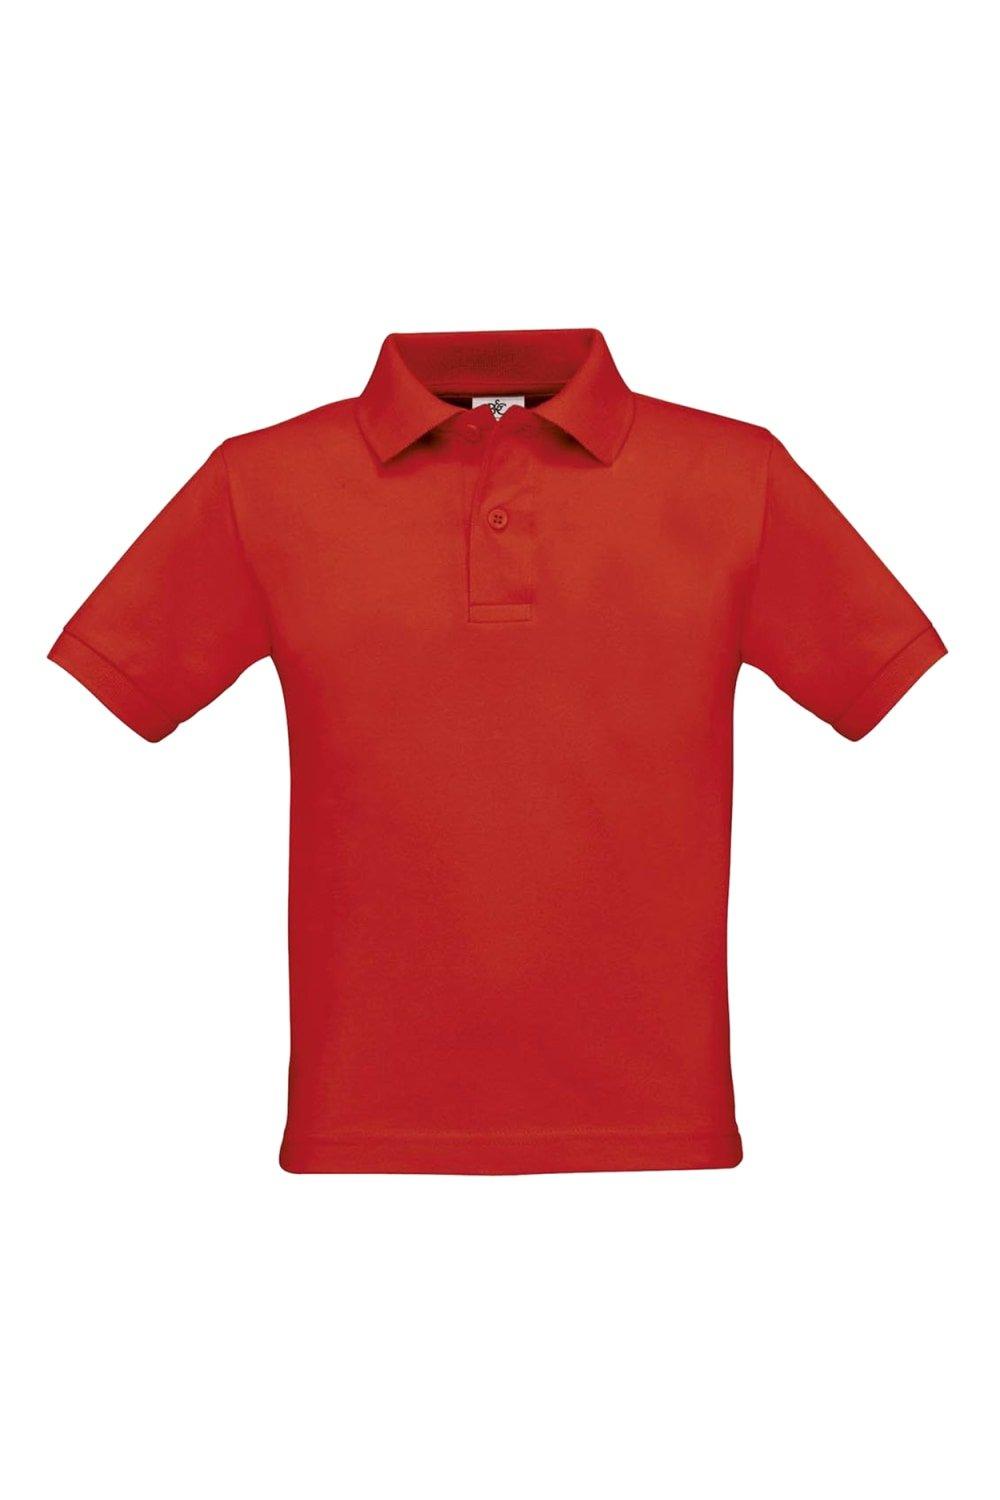 Рубашка-поло Safran B&C, красный